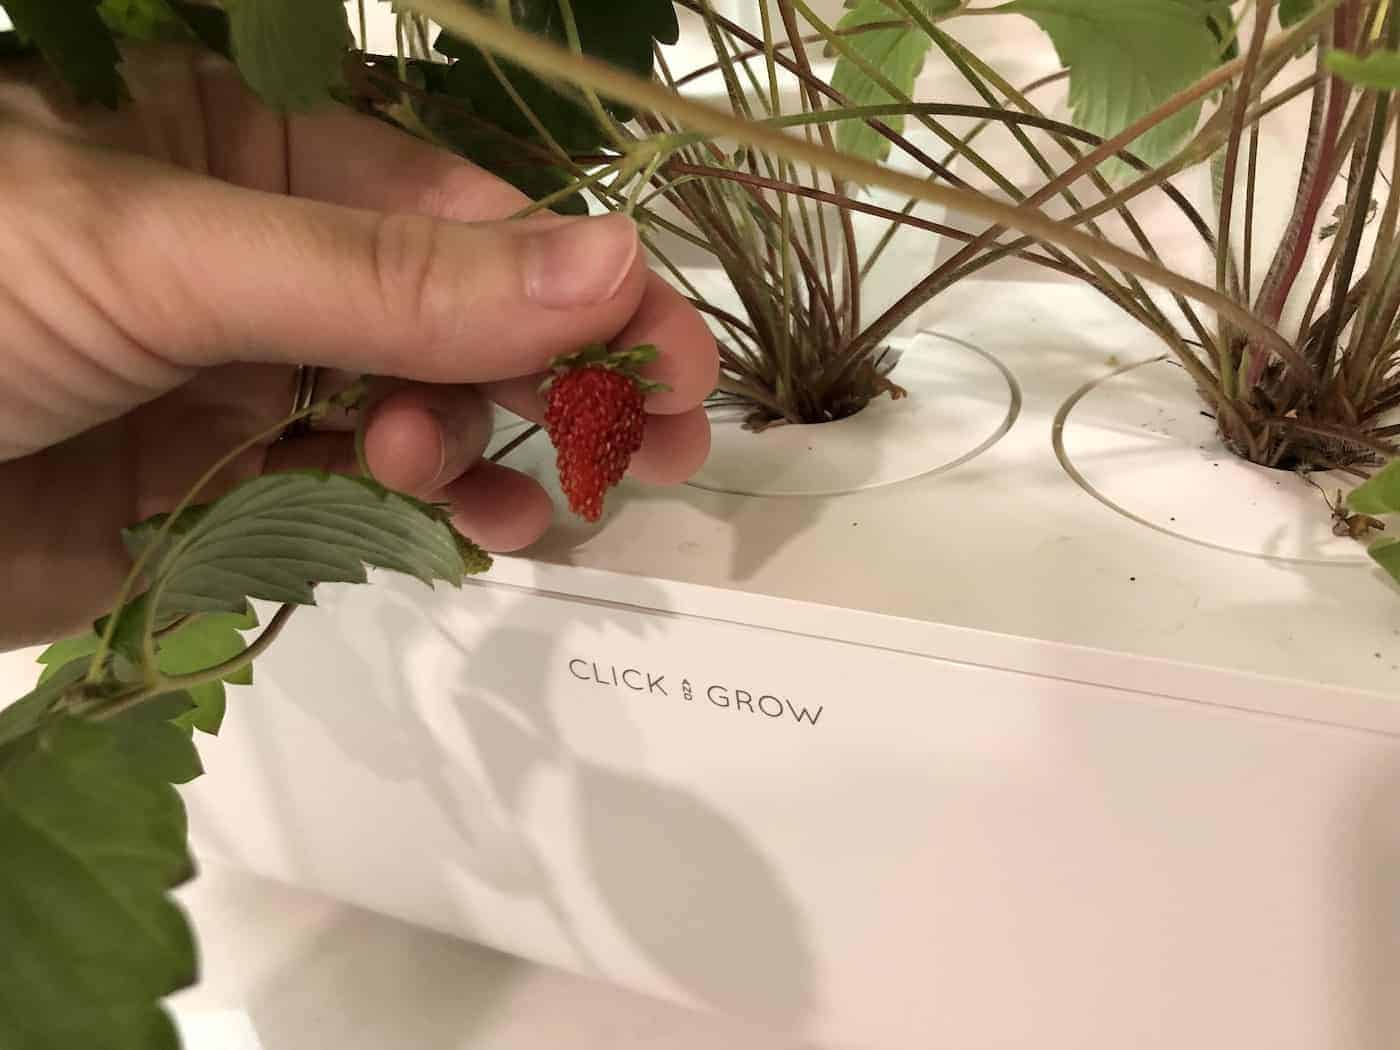 Harvesting strawberries indoors - smart garden